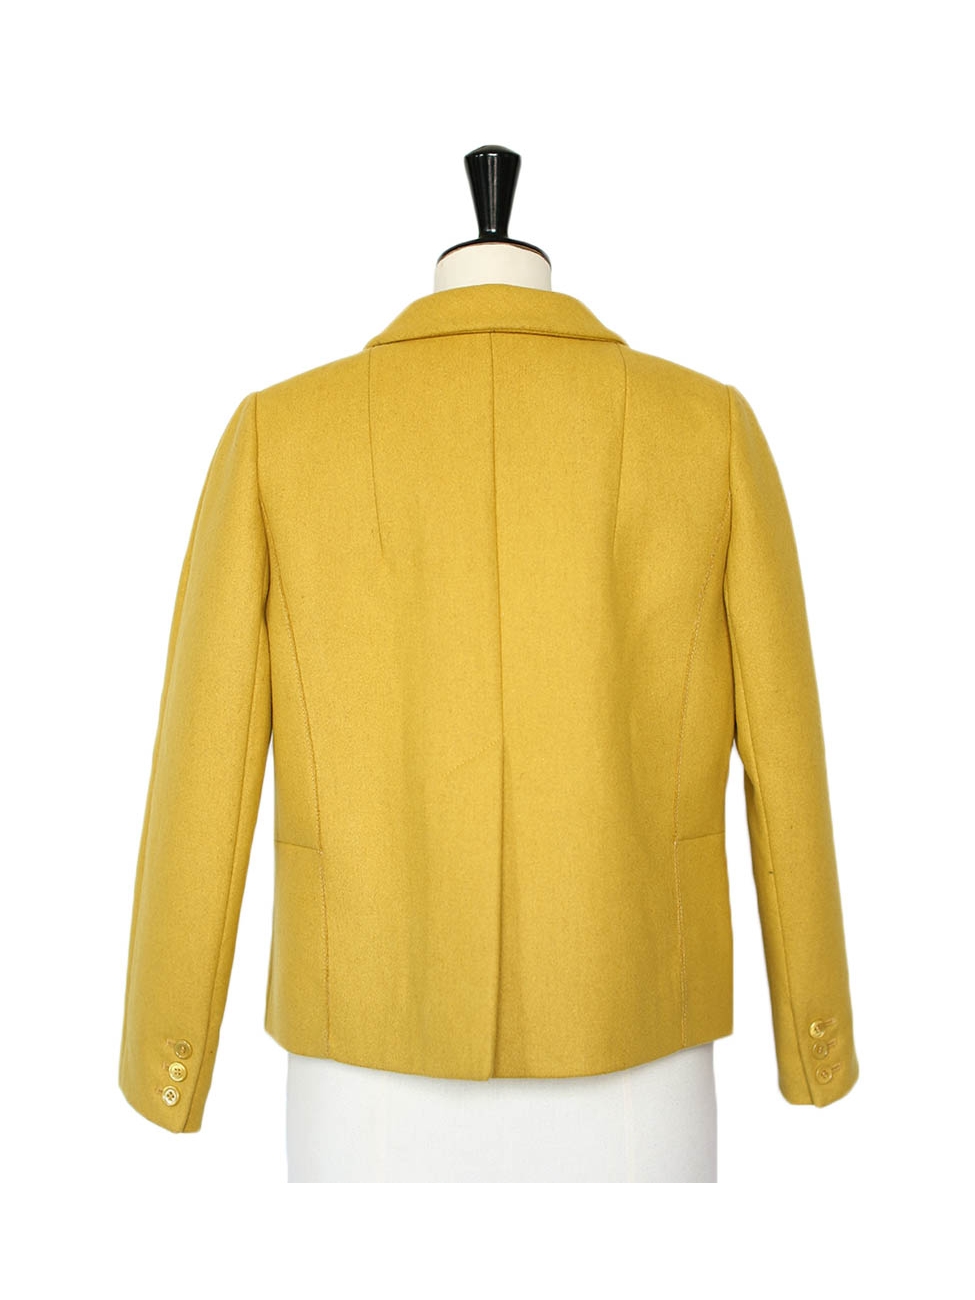 Wool jacket Louis Feraud Yellow size 40 FR in Wool - 26338160